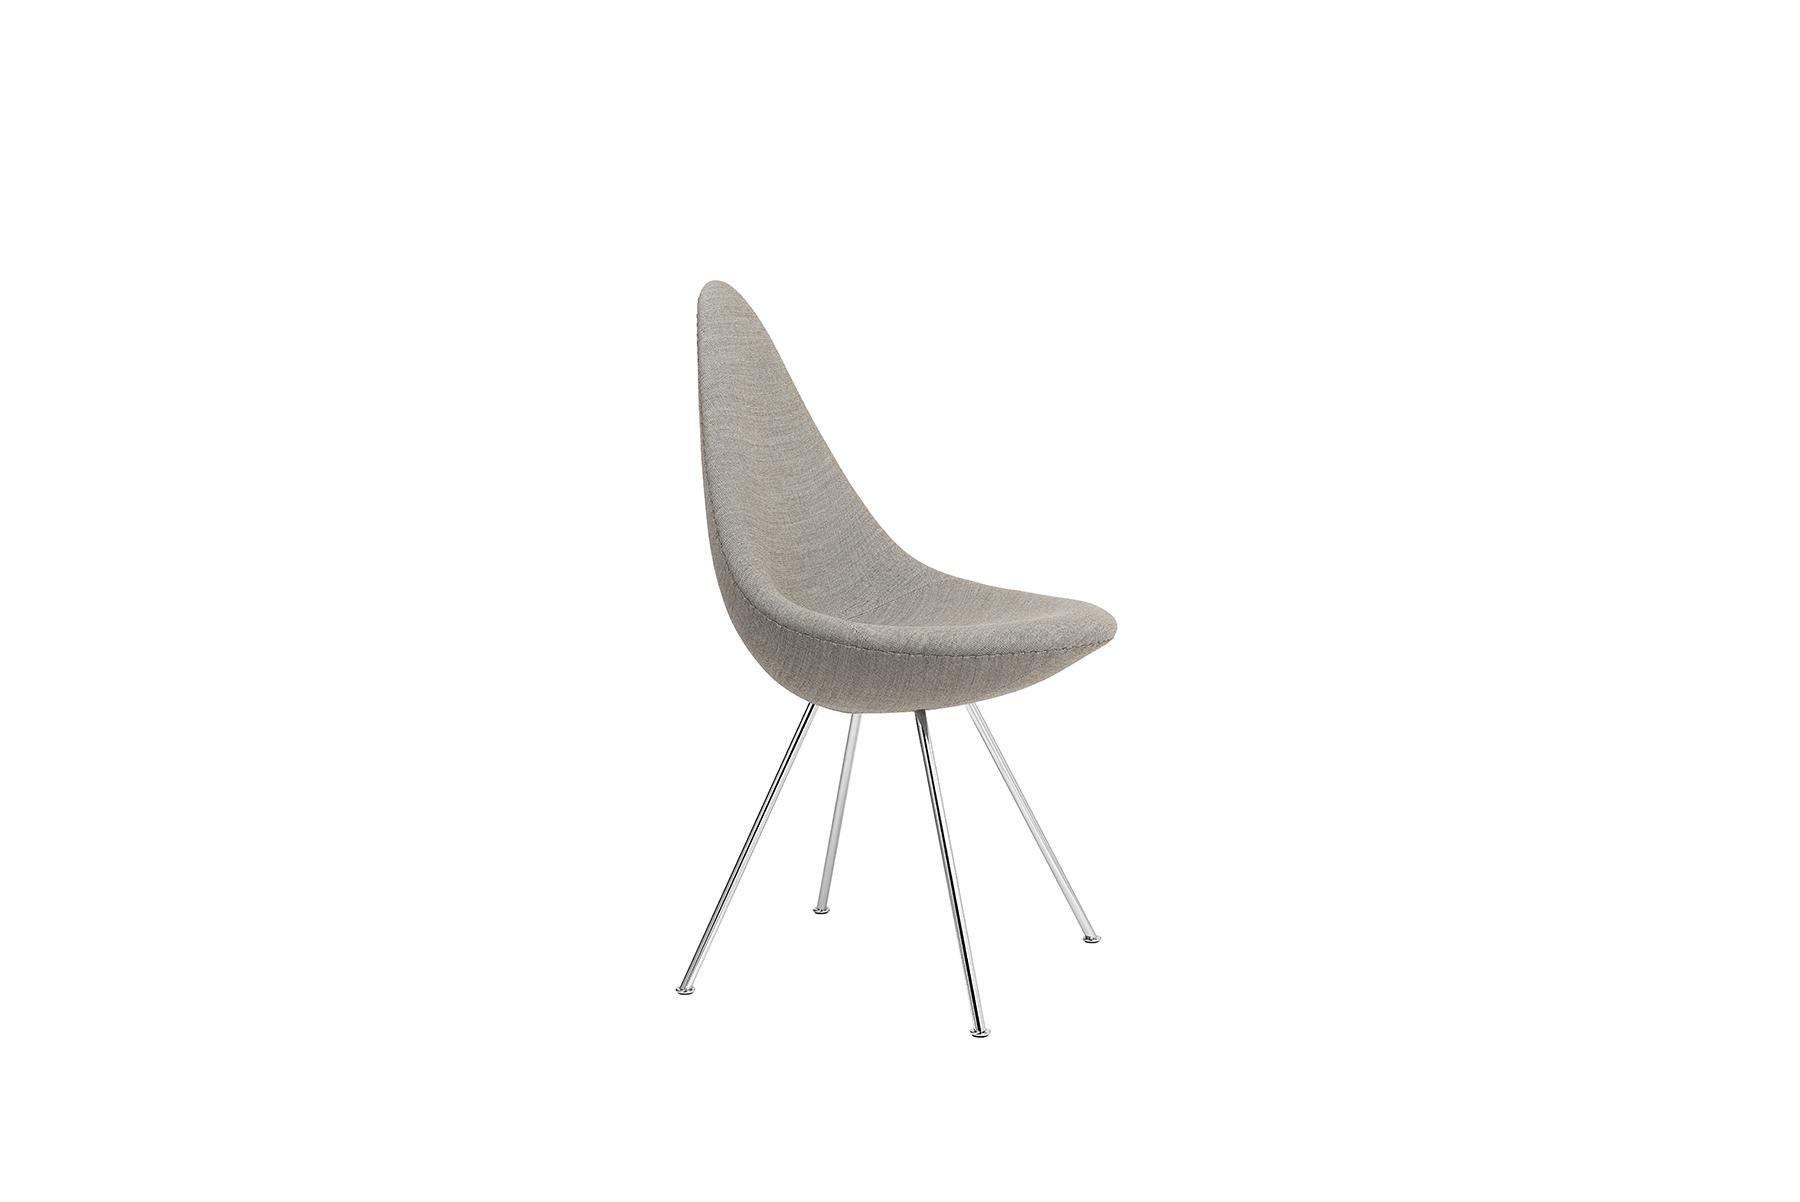 Der vollständig gepolsterte Drop fügt sich elegant in eine Vielzahl von Umgebungen ein und ist ein großartiges Beispiel für ein Möbeldesign, das einen ganzen Raum durch seine bloße Präsenz und Schönheit beeinflussen und aufwerten kann. Arne Jacobsen